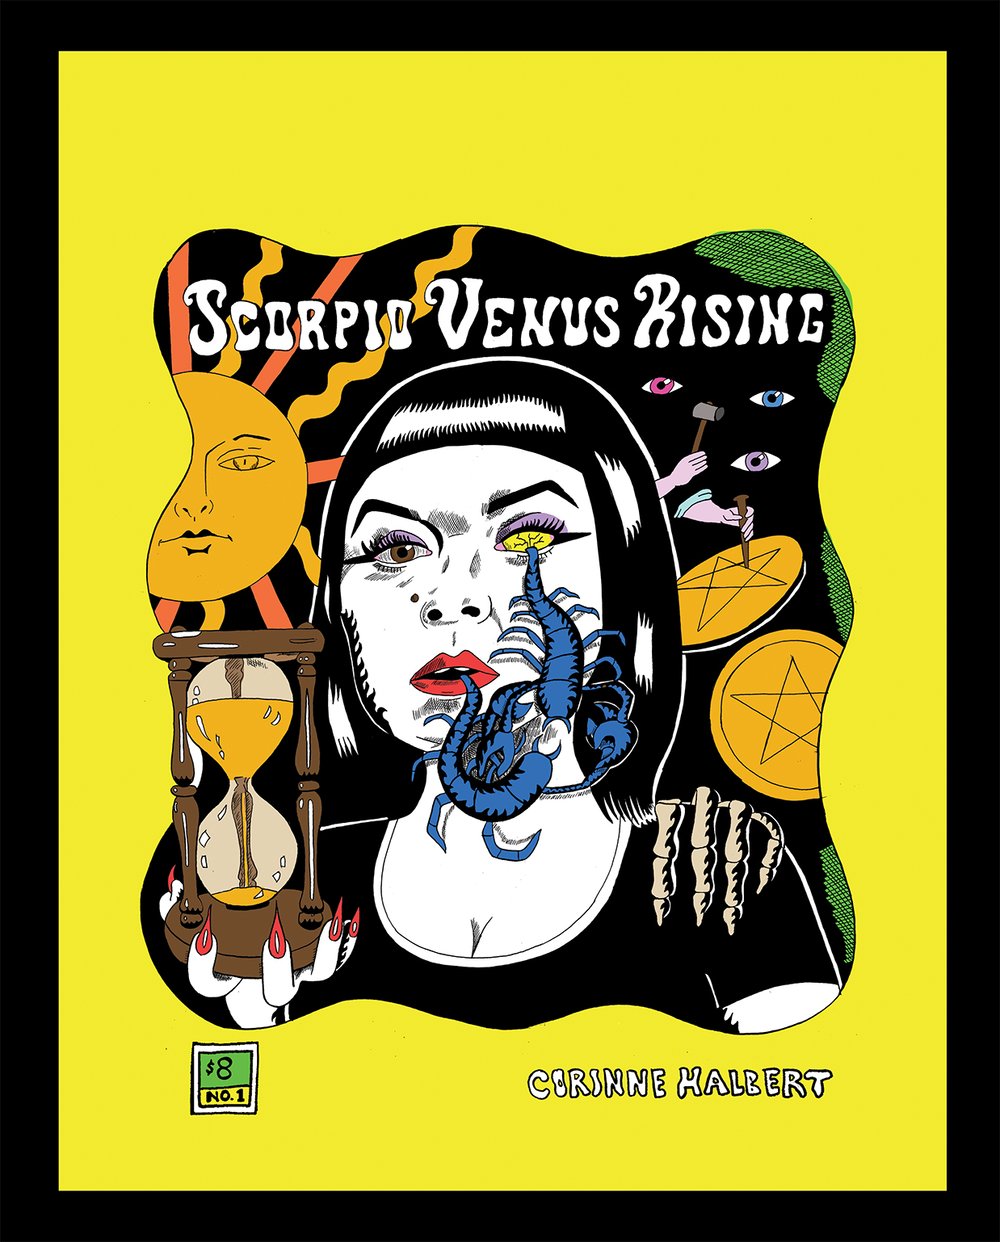 Scorpio Venus Rising #1